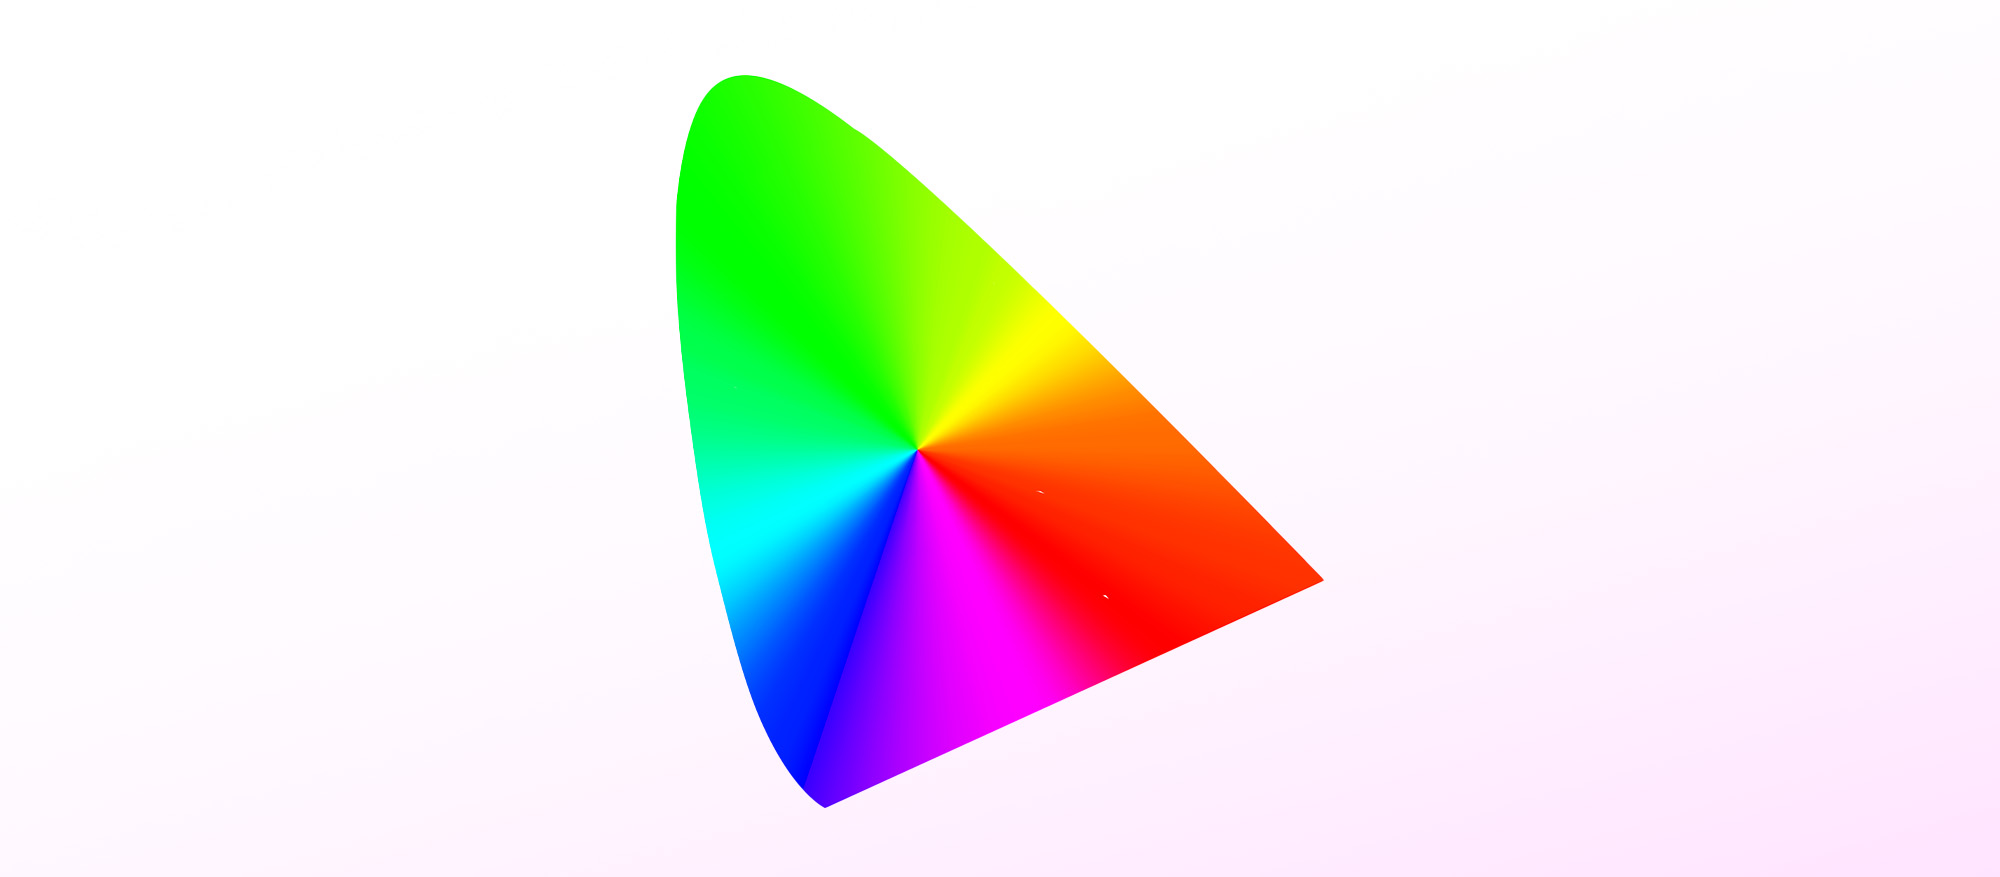 El icono de los perfiles ICC se basa en el diagrama de cromaticidad estándar de la CIE y sirve como punto de proyección para los espacios de color RGB.